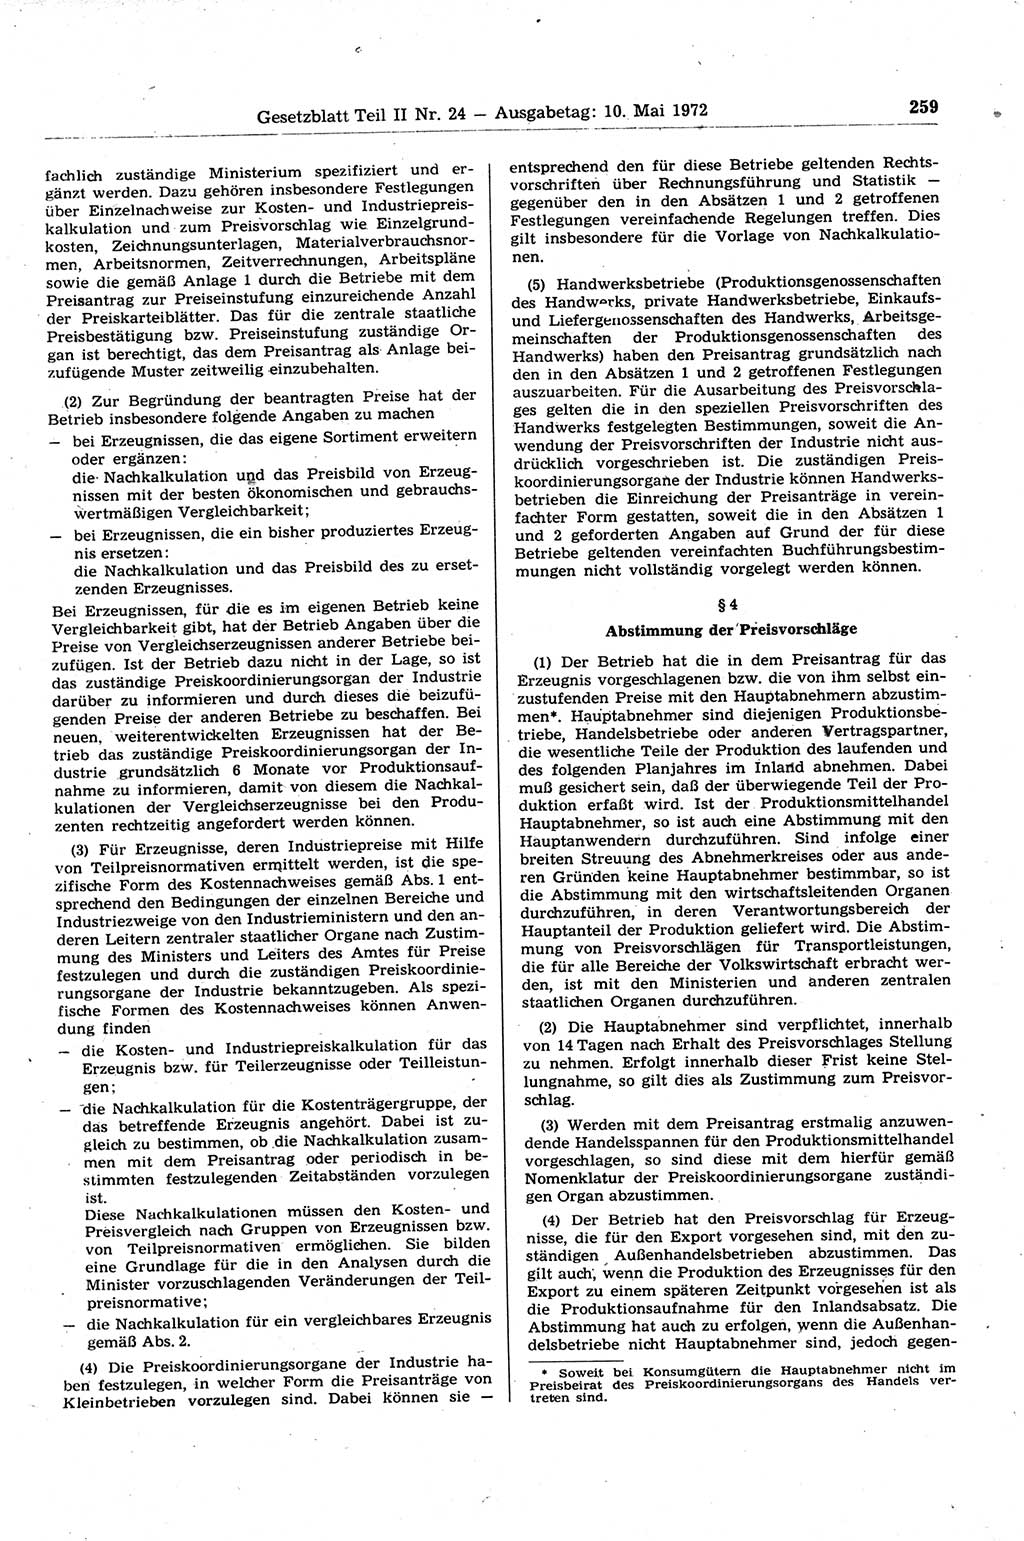 Gesetzblatt (GBl.) der Deutschen Demokratischen Republik (DDR) Teil ⅠⅠ 1972, Seite 259 (GBl. DDR ⅠⅠ 1972, S. 259)